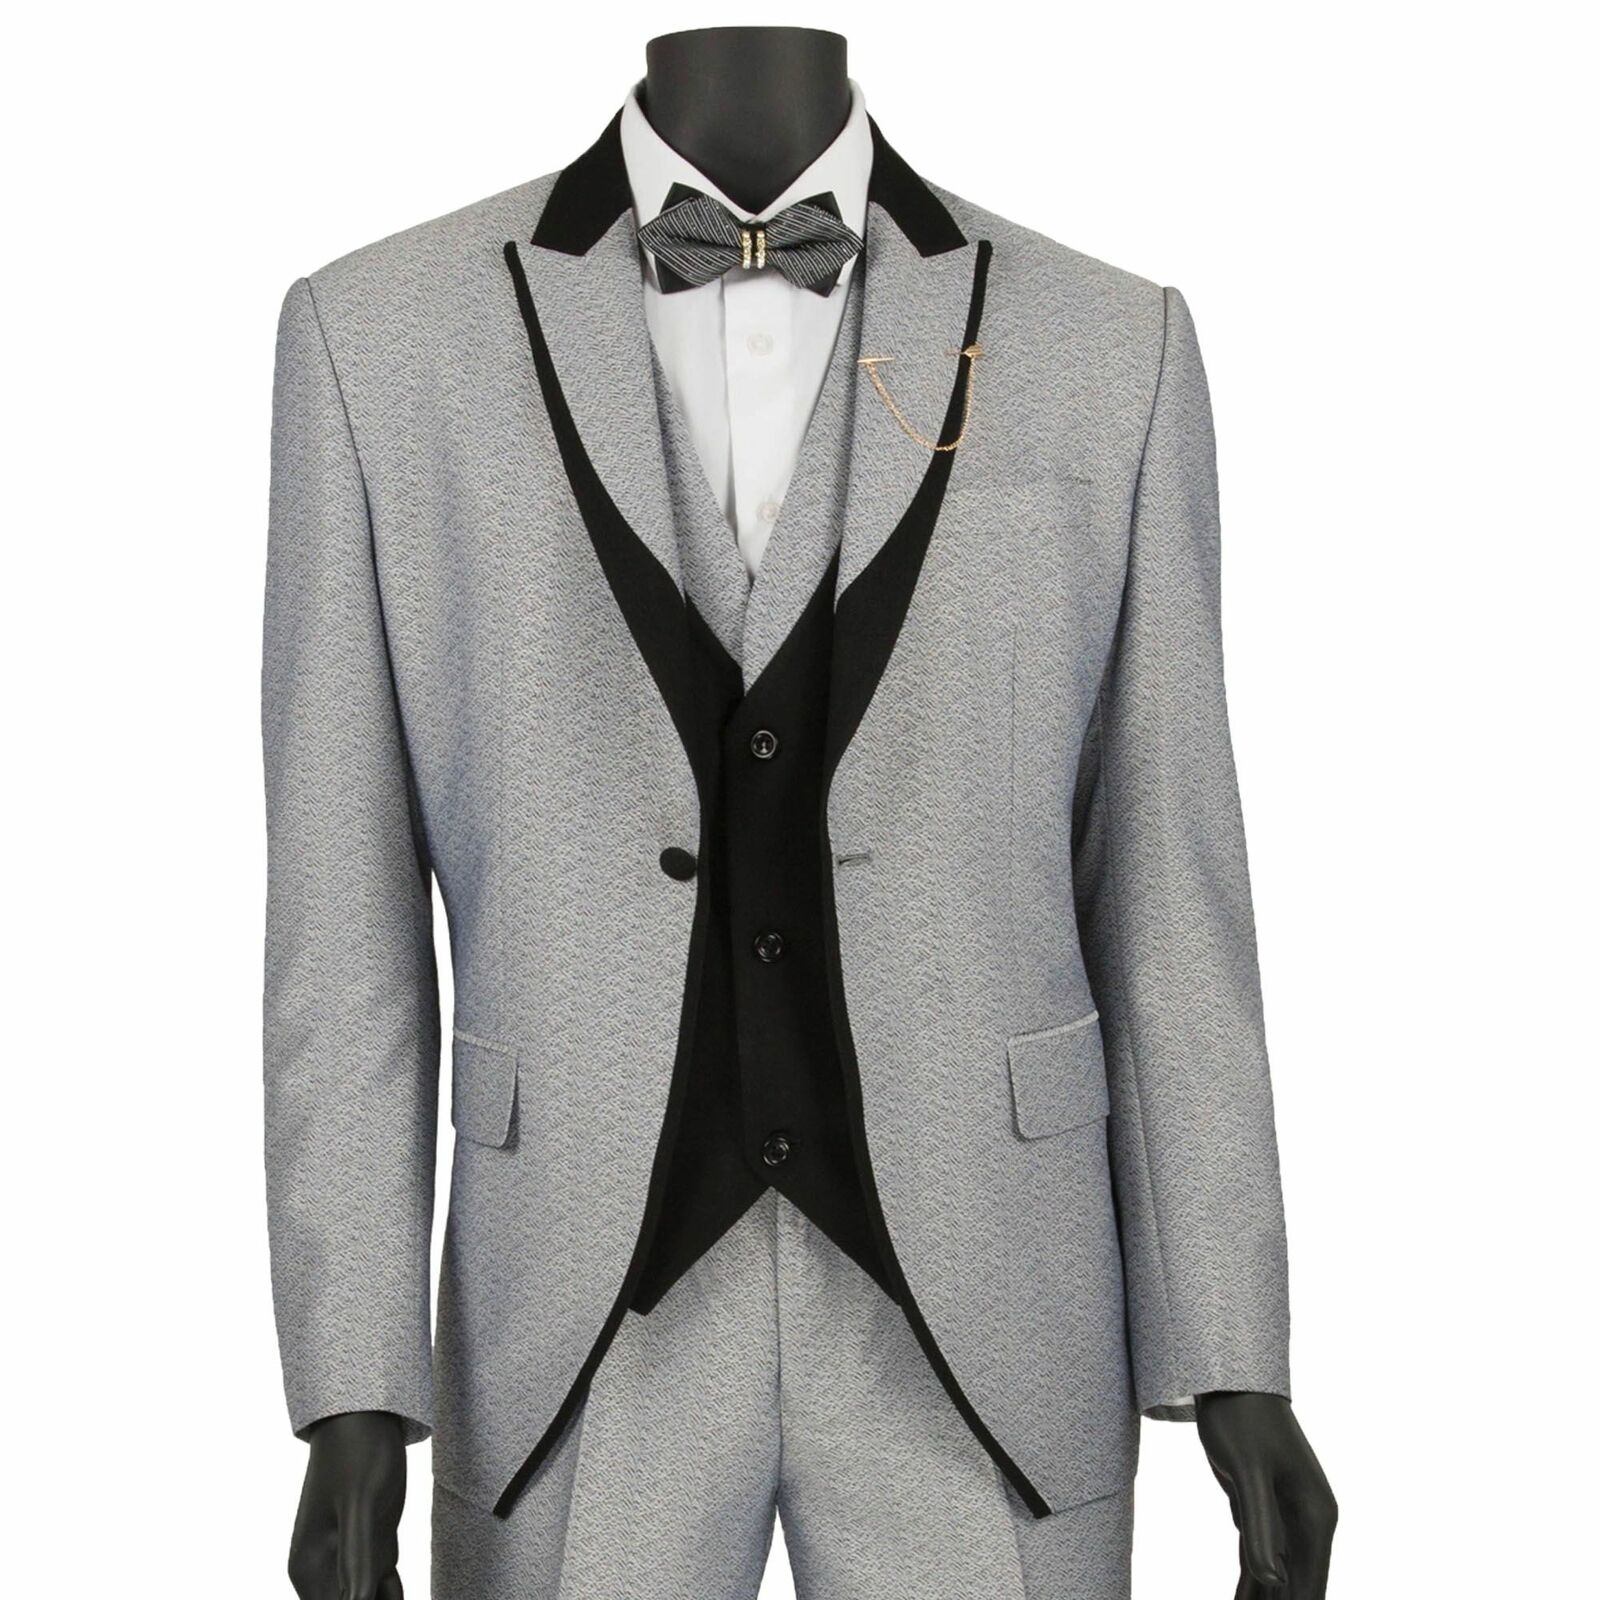 VINCI Men's Silver Textured 3pc Tuxedo Suit w/ Black Lapel & Tri